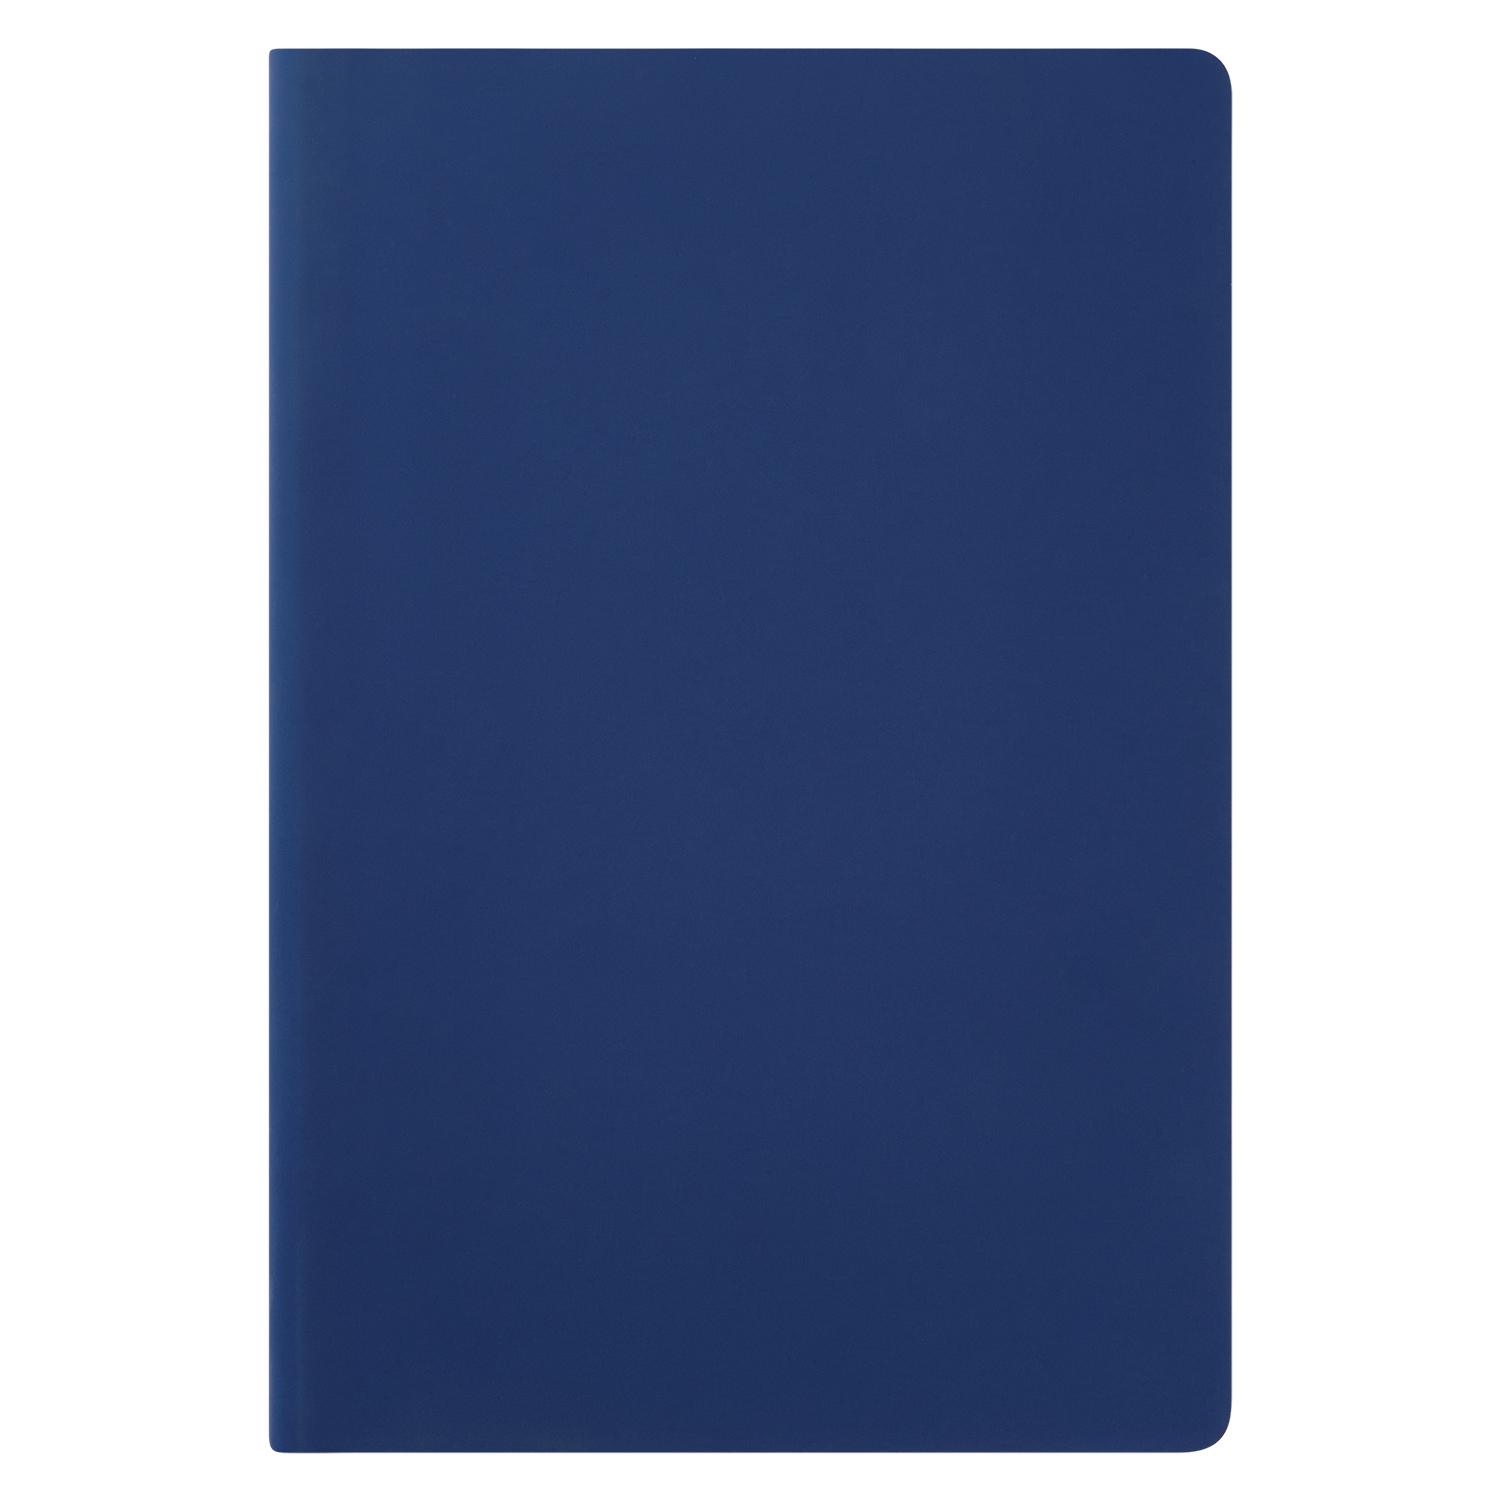 Ежедневник Spark недатированный, синий (без упаковки, без стикера, с черной подложкой, без прокраса уреза)